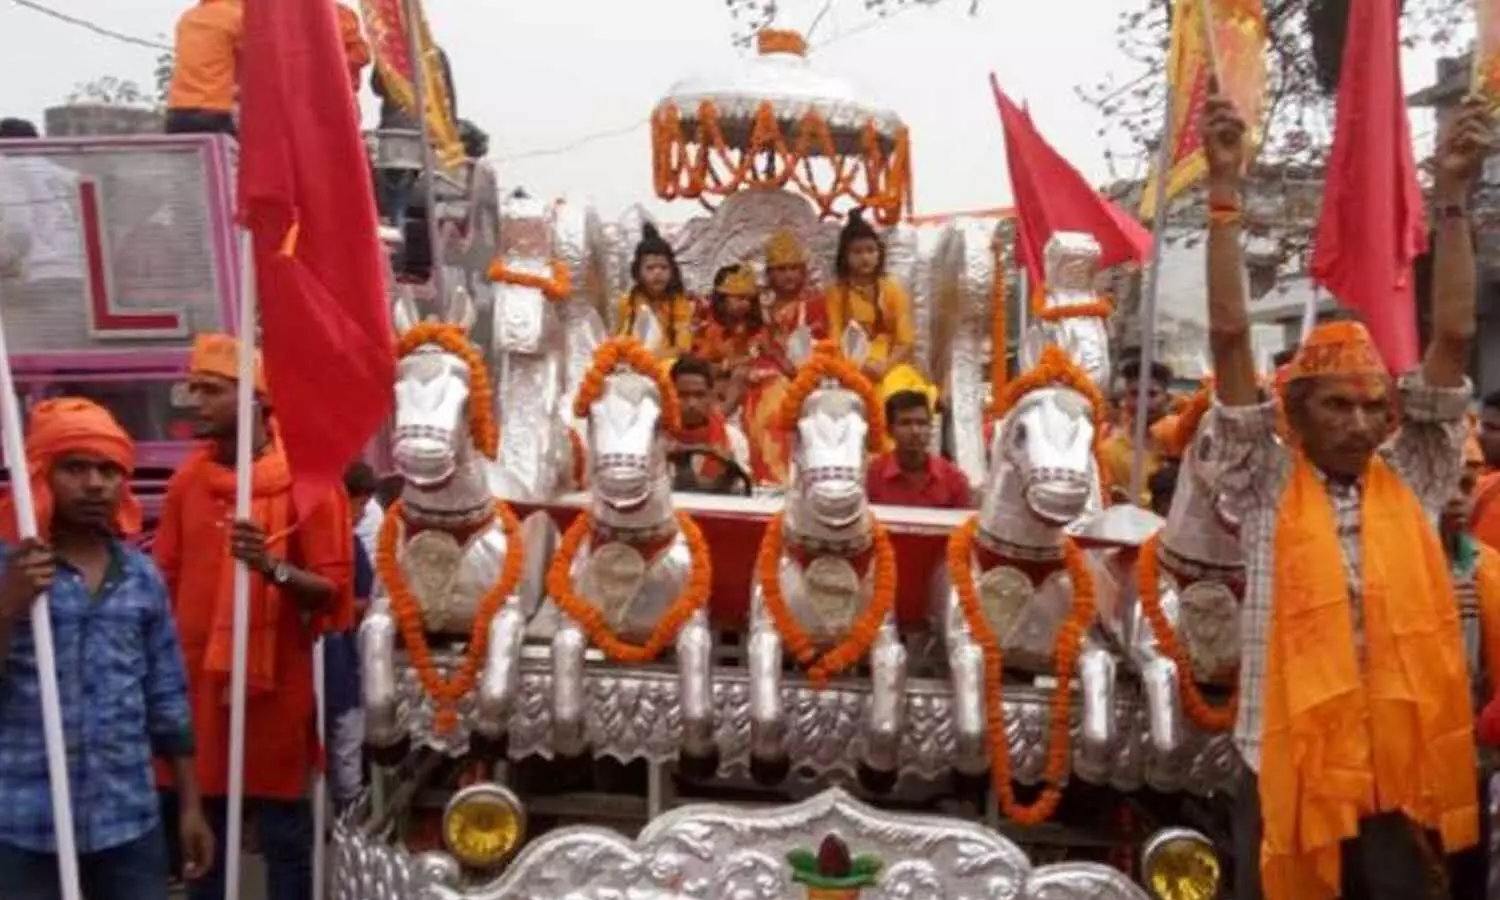 Shree Ram Shobha Yatra: विजय दशमी पर लखनऊ में निकलेगी श्री राम शोभायात्रा